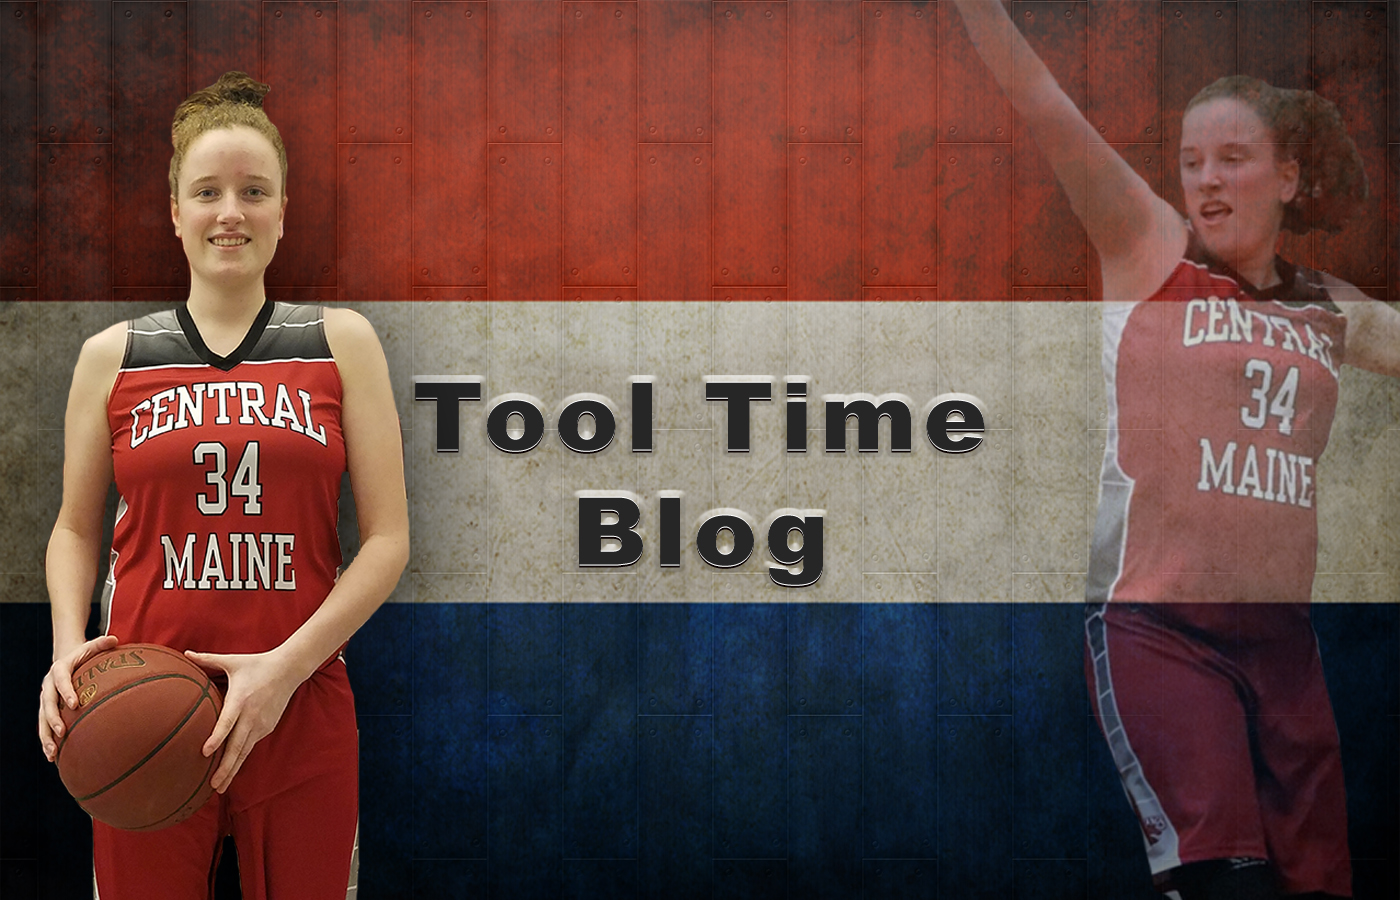 Tool Time Blog - 5/24/19